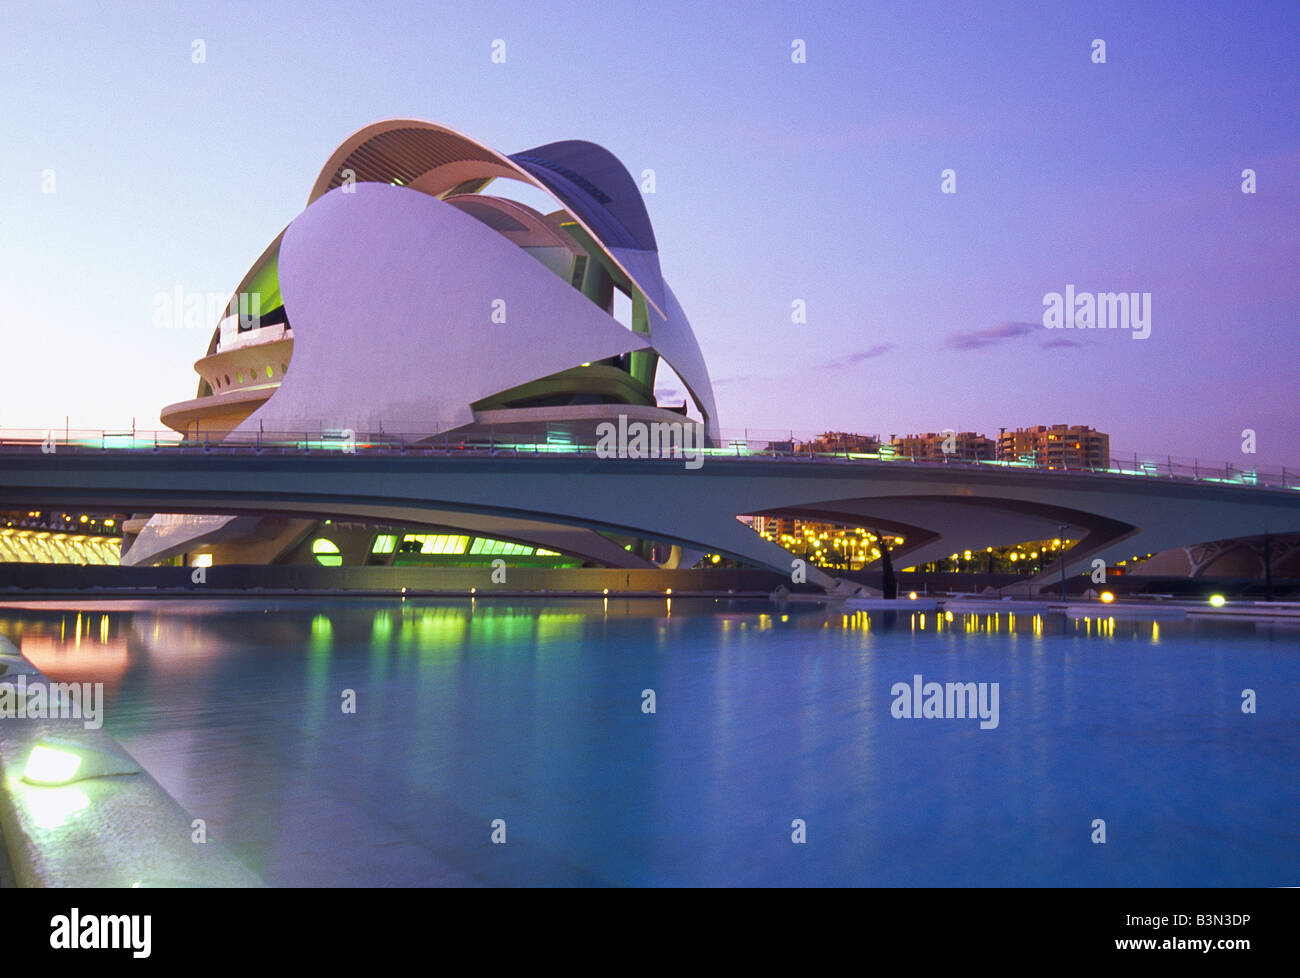 Palau de les Arts. Night view. Ciutat de les Arts i les Ciencies. Valencia. Spain. Stock Photo